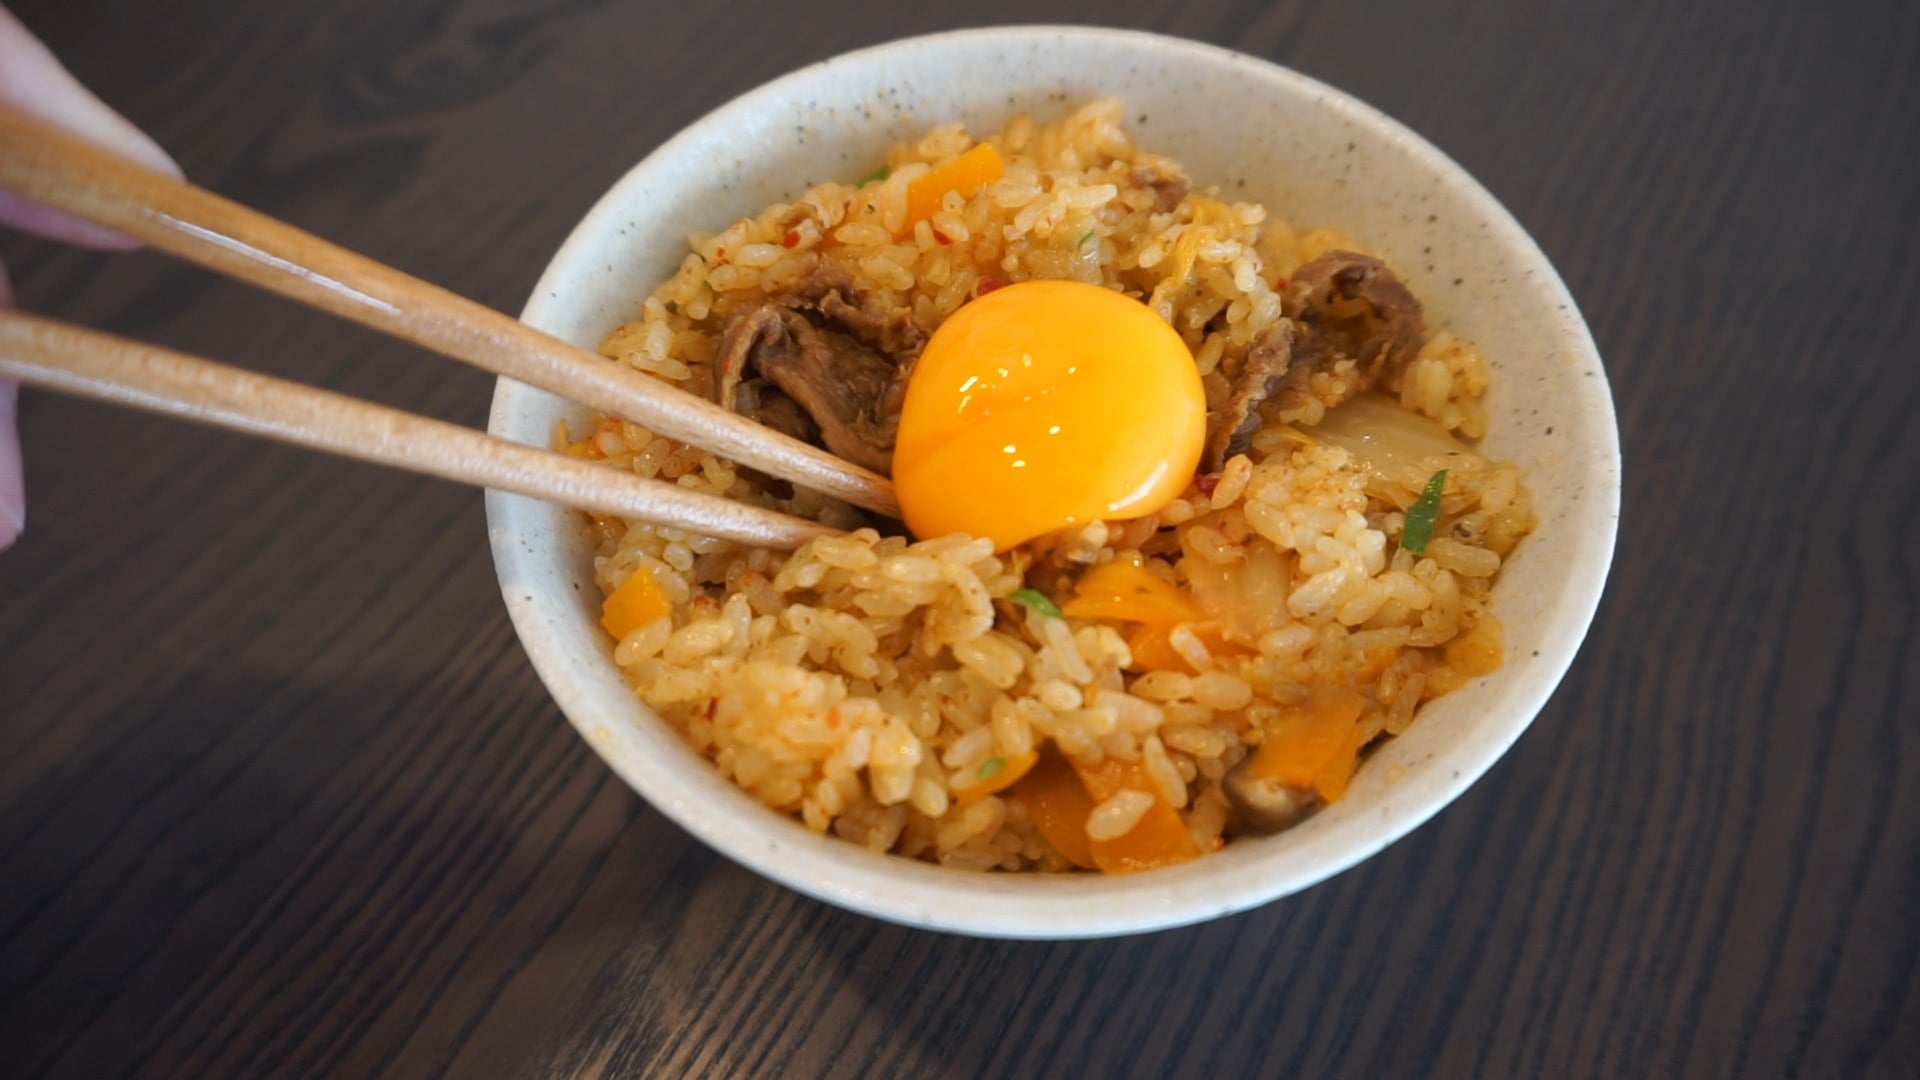 Recette pour Rice Cooker : Riz au boeuf, kimchi et jaune d’œuf